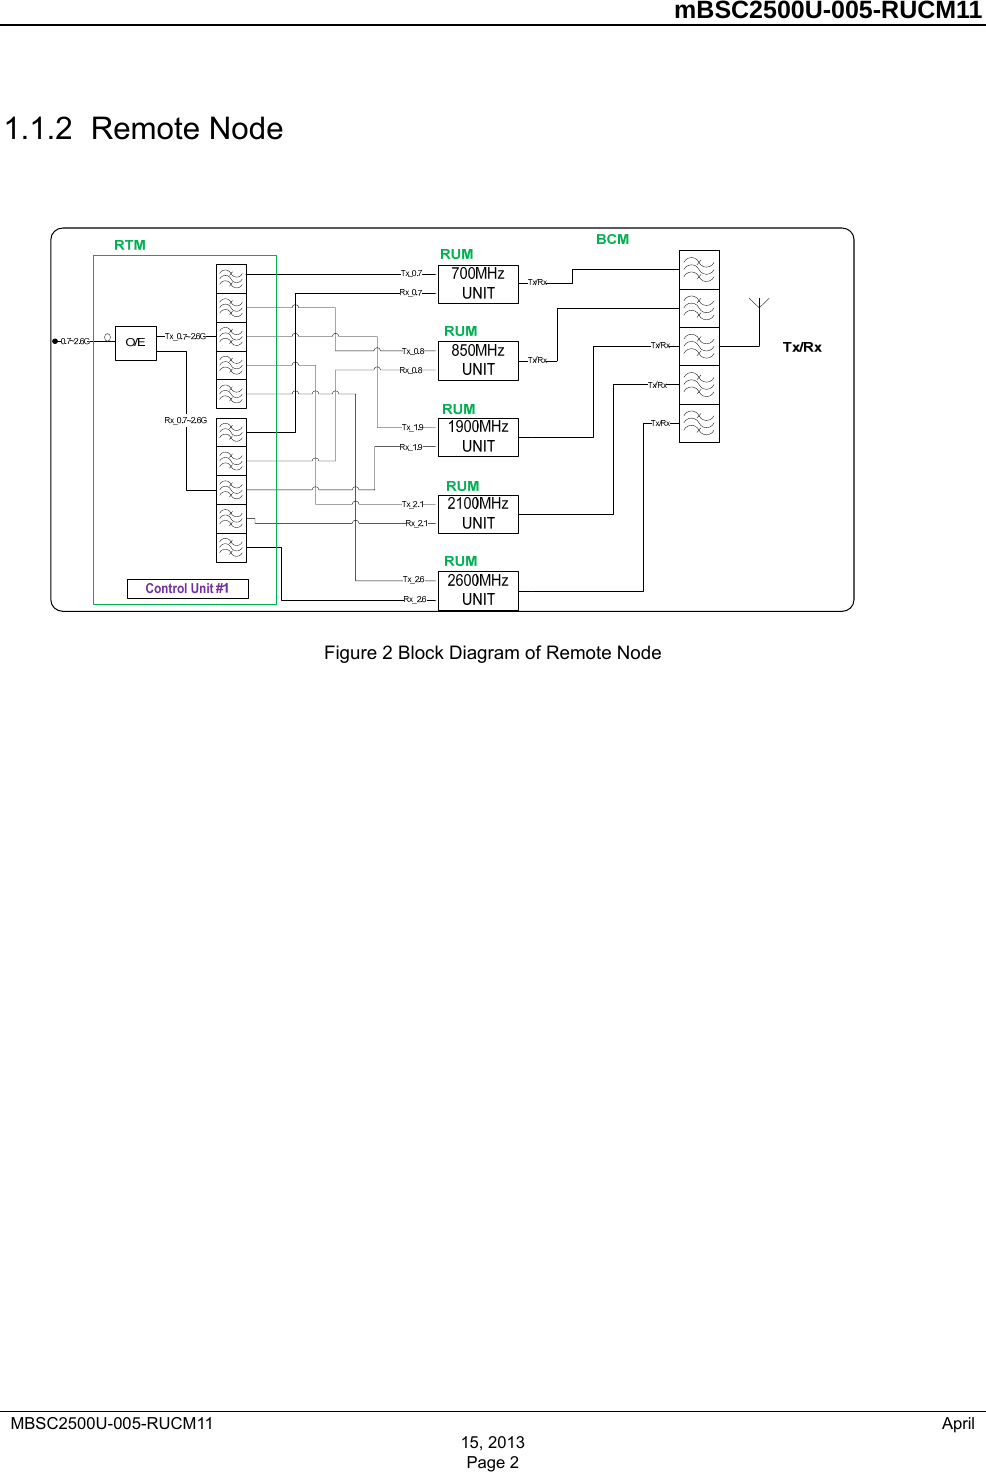         mBSC2500U-005-RUCM11   MBSC2500U-005-RUCM11                                April 1.1.2  Remote Node  Figure 2 Block Diagram of Remote Node 15, 2013 Page 2 